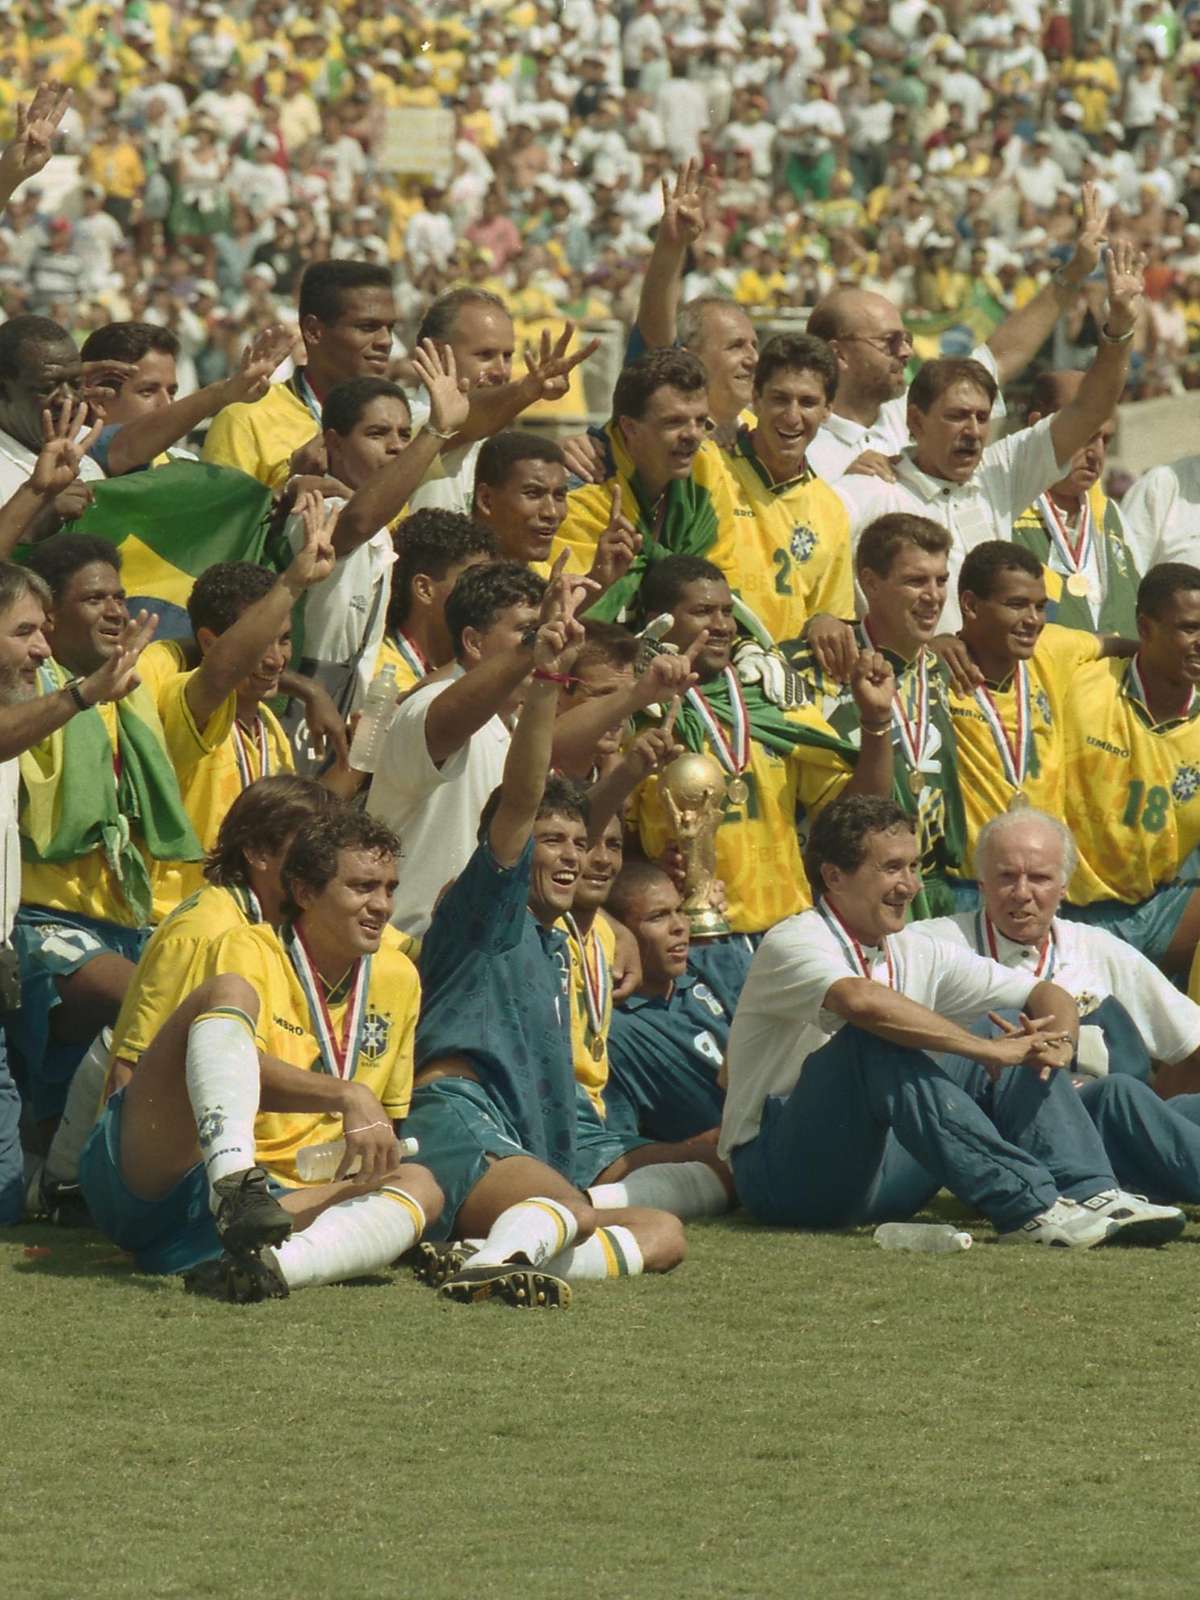 O Tri e o Tetra: o que mudou no Brasil e no futebol entre 1970